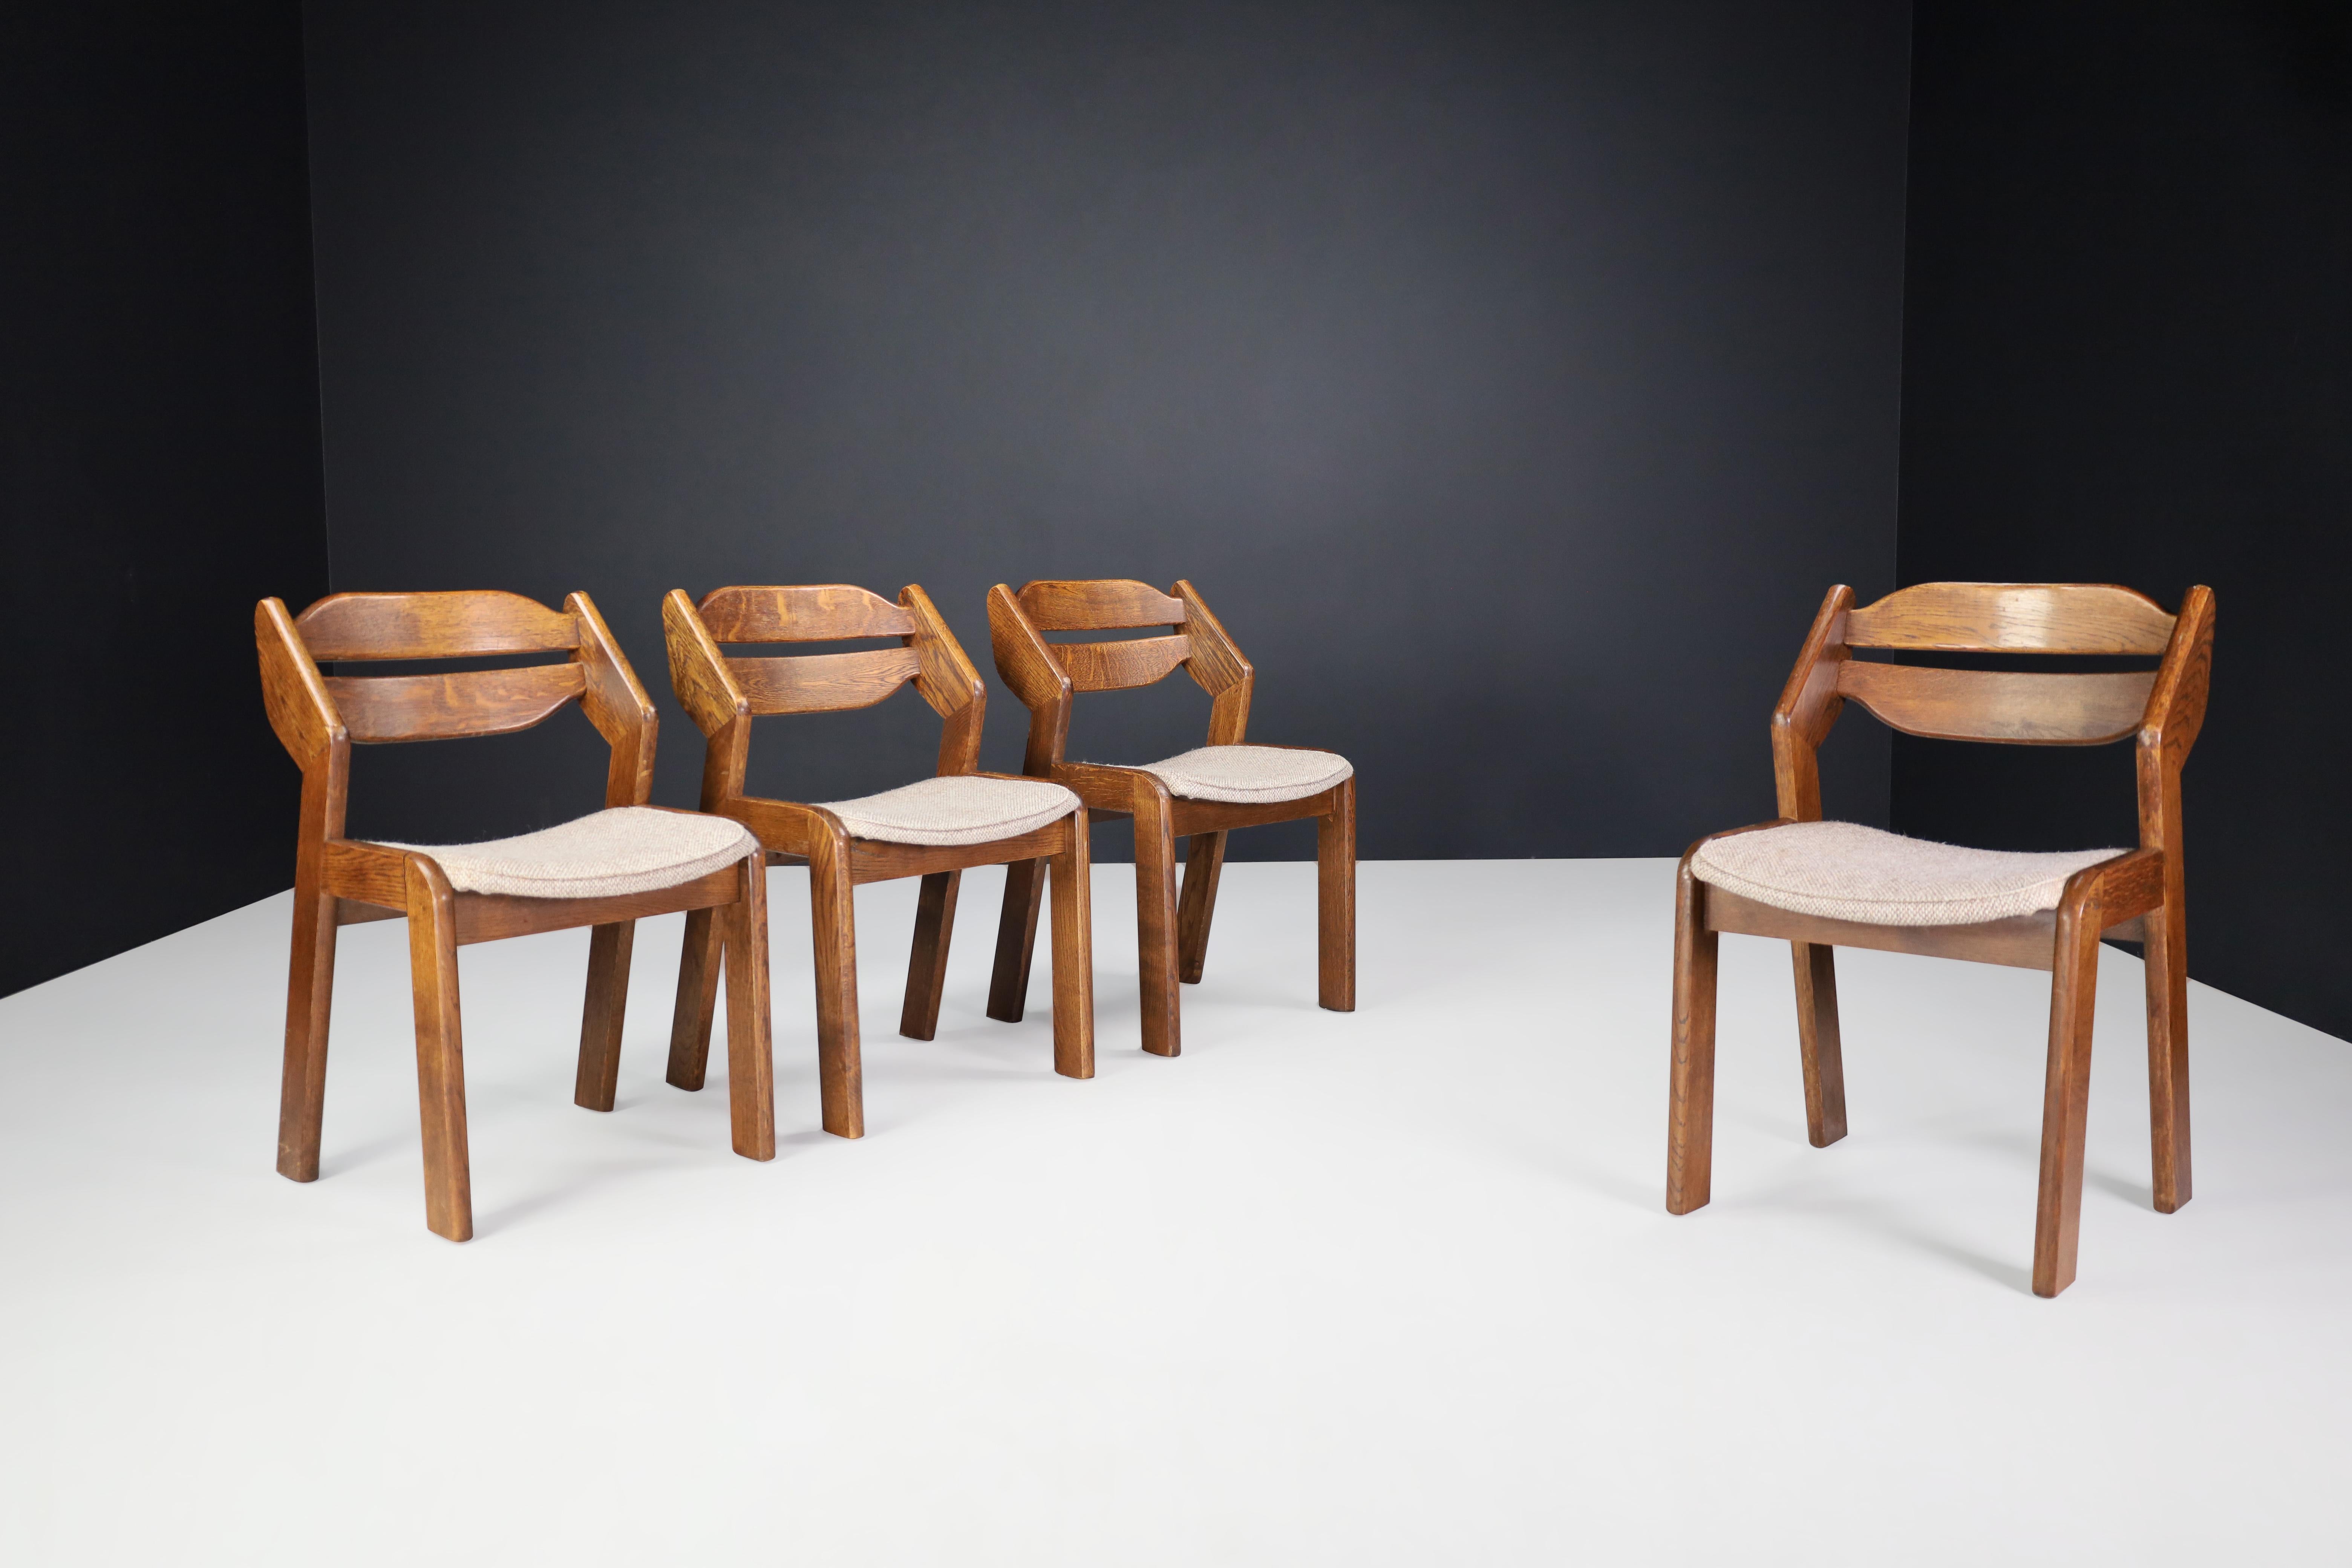 Skulpturale Esszimmerstühle aus Eiche und Stoff, Frankreich, 1960er Jahre

Satz von vier skulpturalen Esszimmerstühlen aus Eiche und Stoff, Frankreich, 1960er Jahre. Diese Stühle sind vollständig aus Holz und Binsen gefertigt. Sie sind in